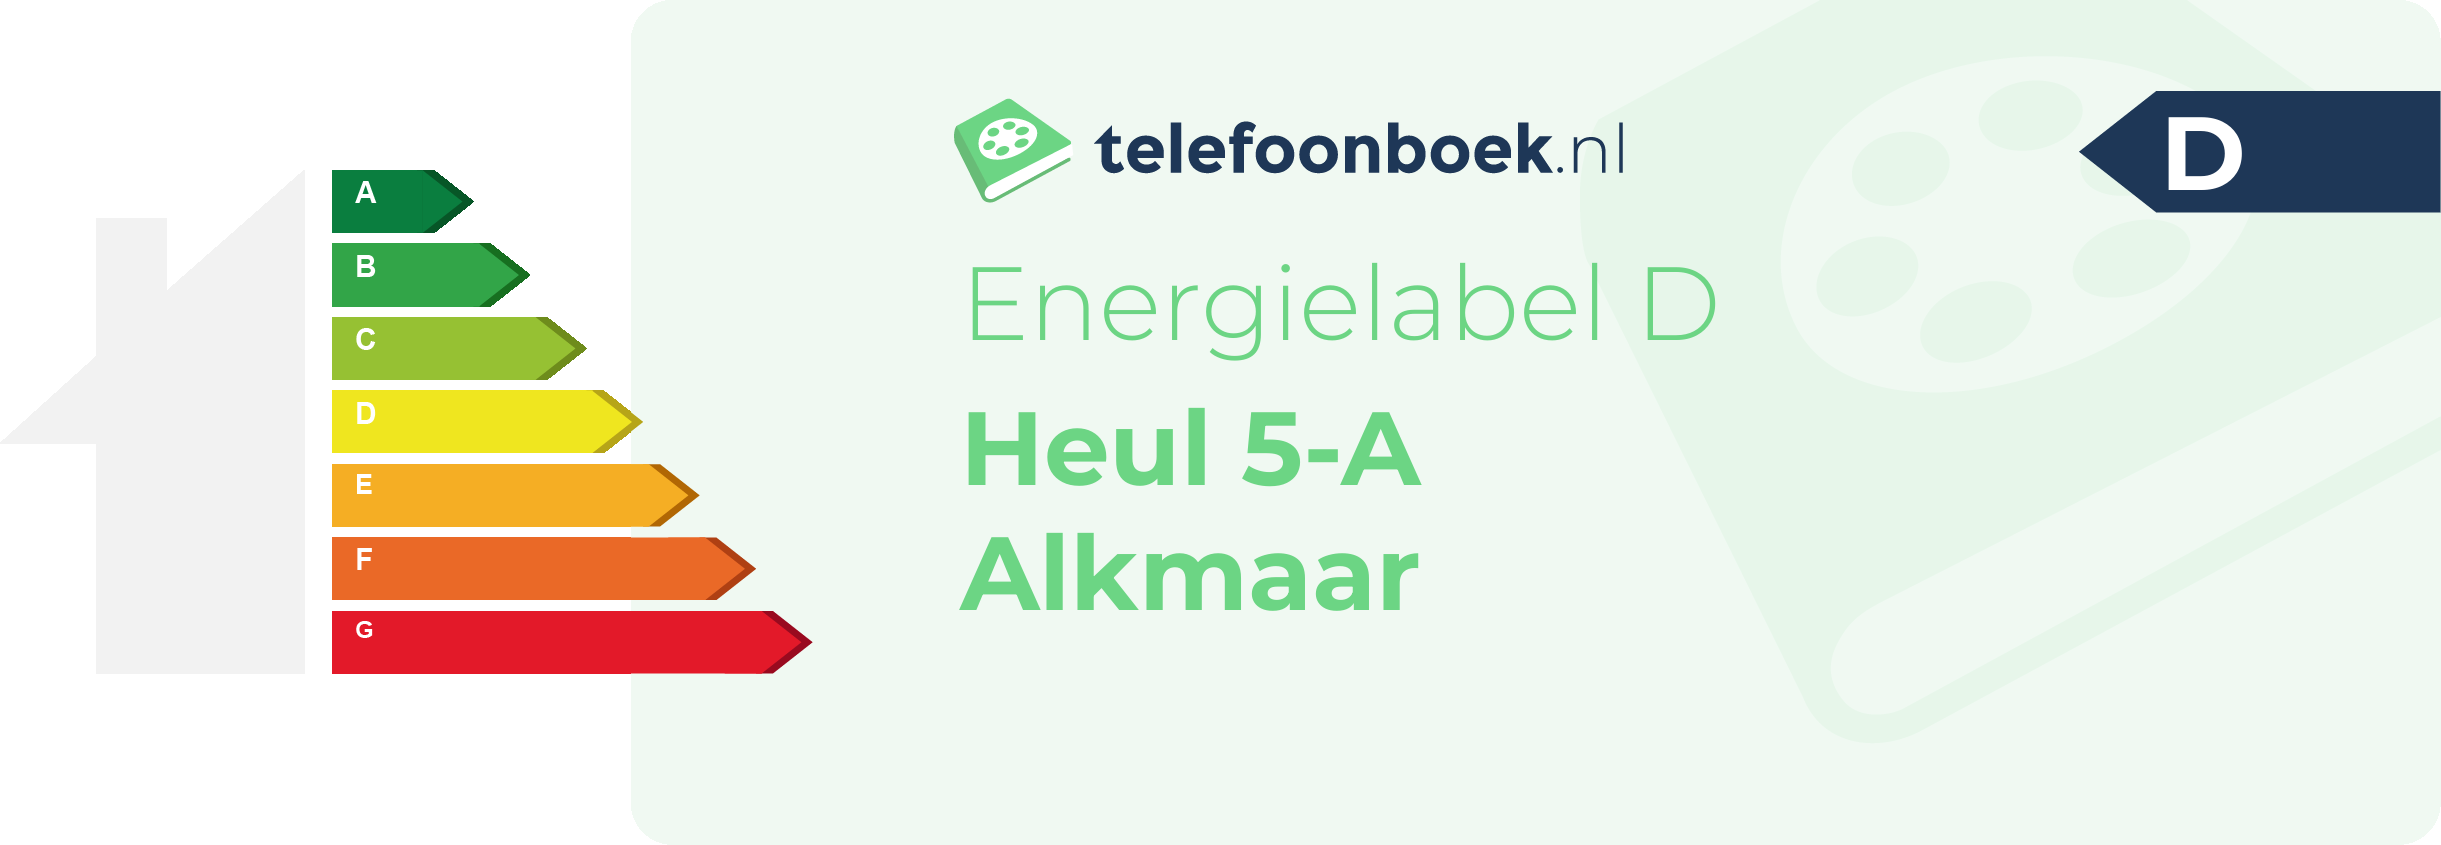 Energielabel Heul 5-A Alkmaar